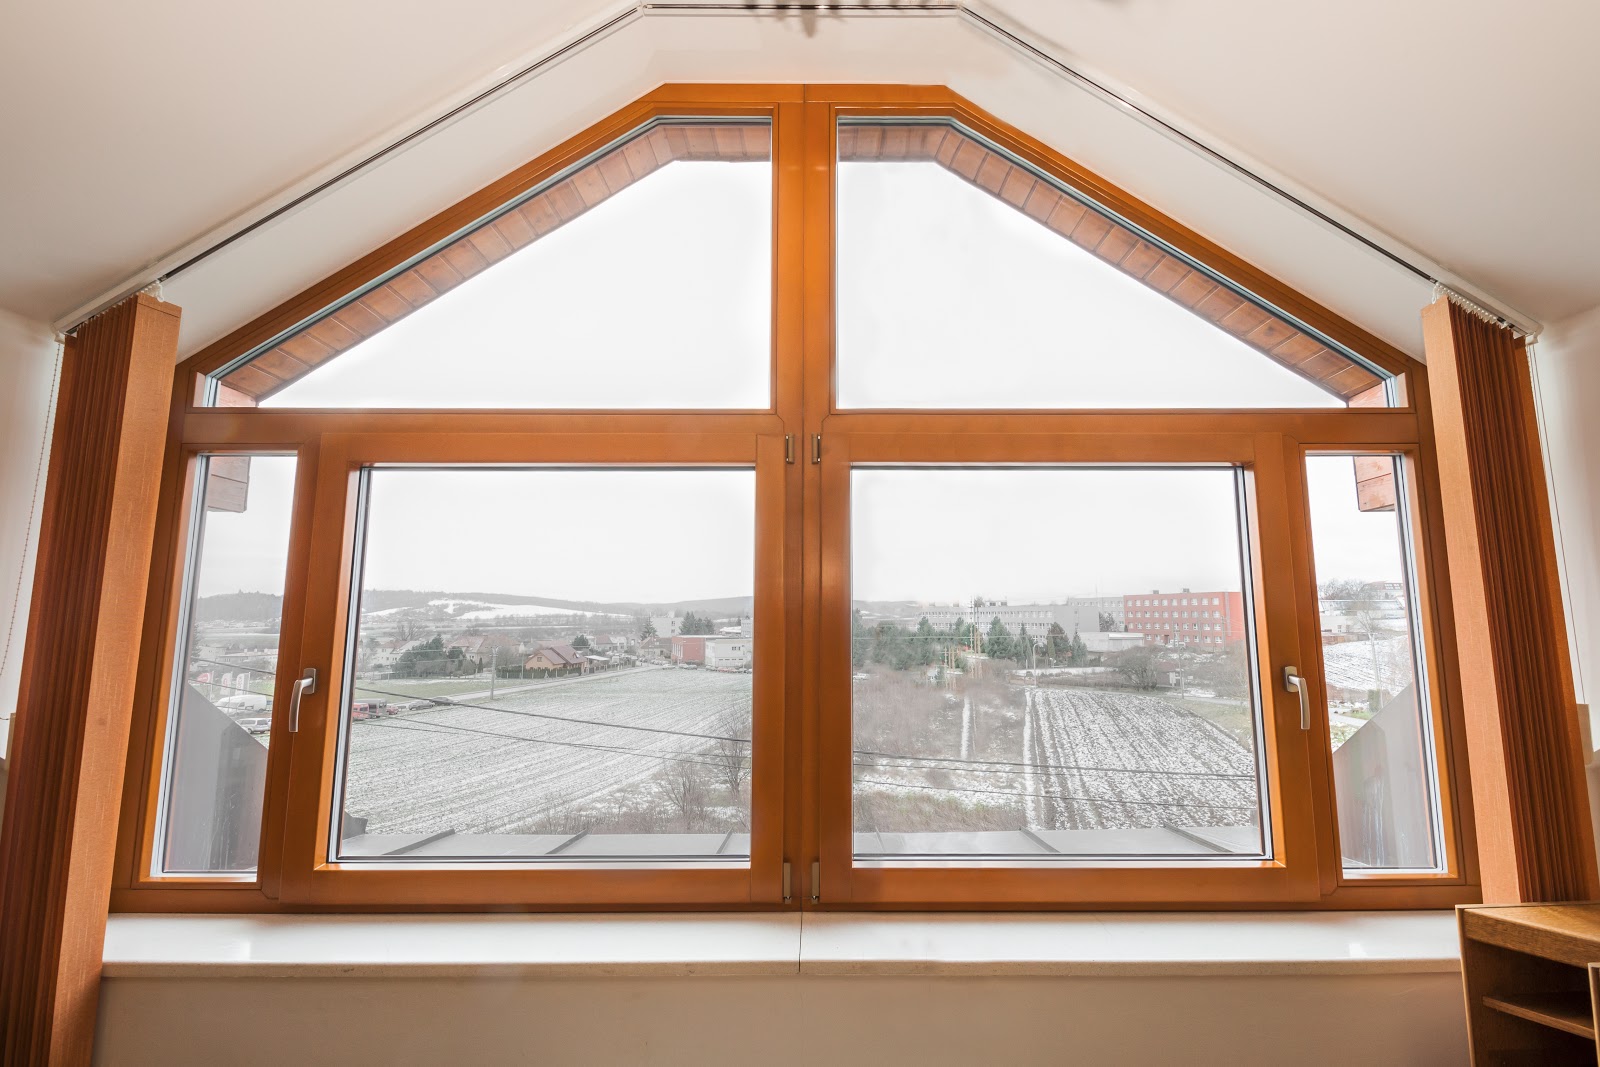 Plastová nebo dřevěná okna, co je lepší? Objektivní srovnání materiálů